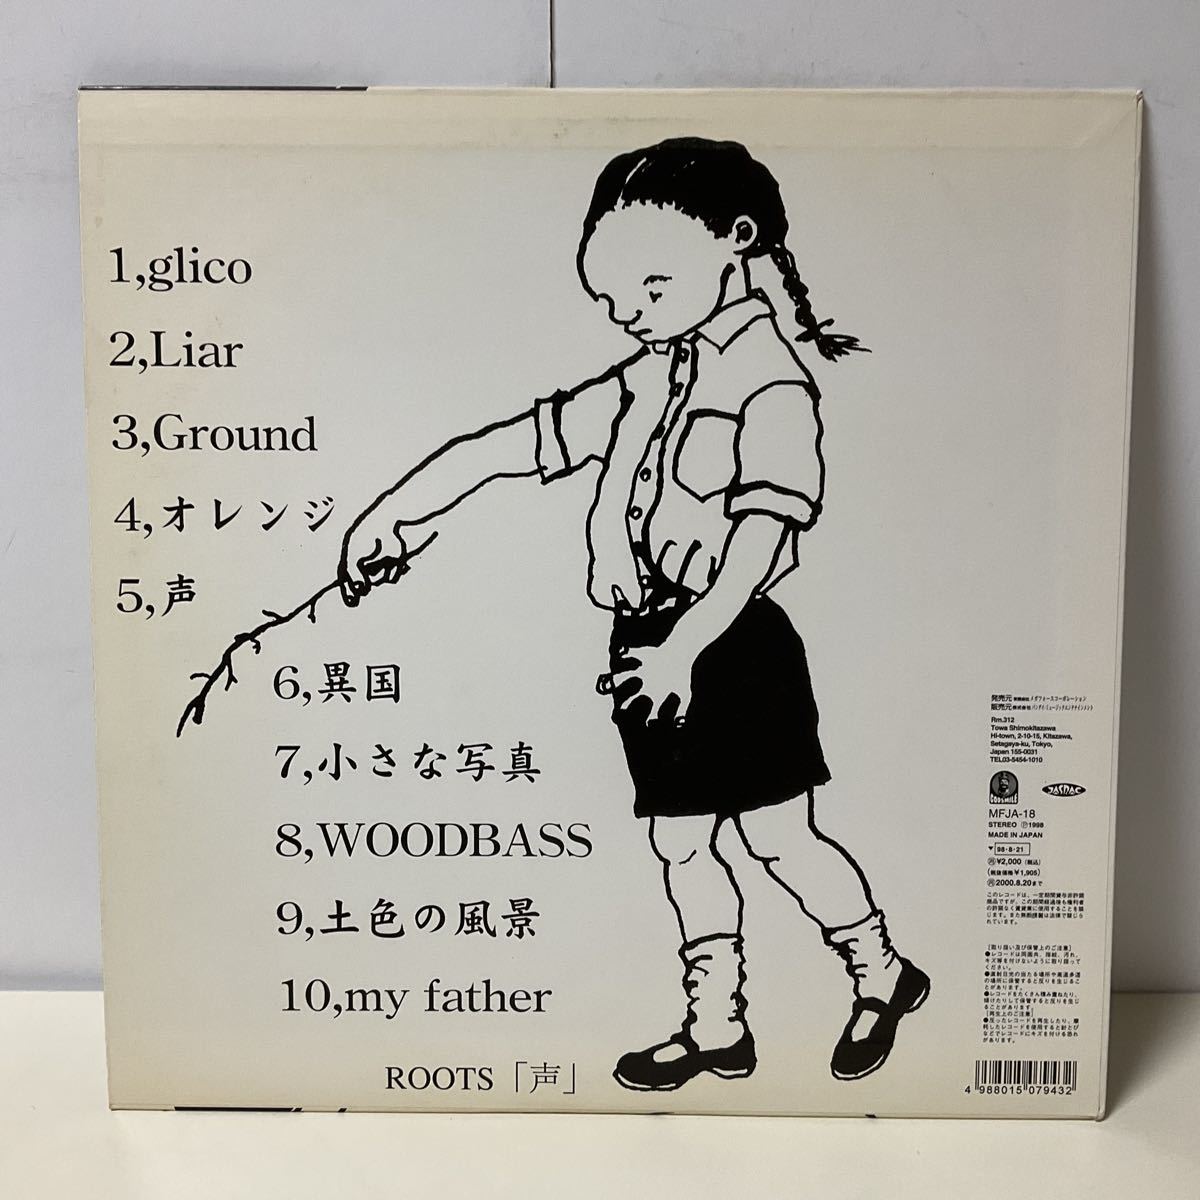 ROOTS / 声 / LP レコード / MFJA-18 / 1998 / ジャパコア / ミクスチャー_画像2